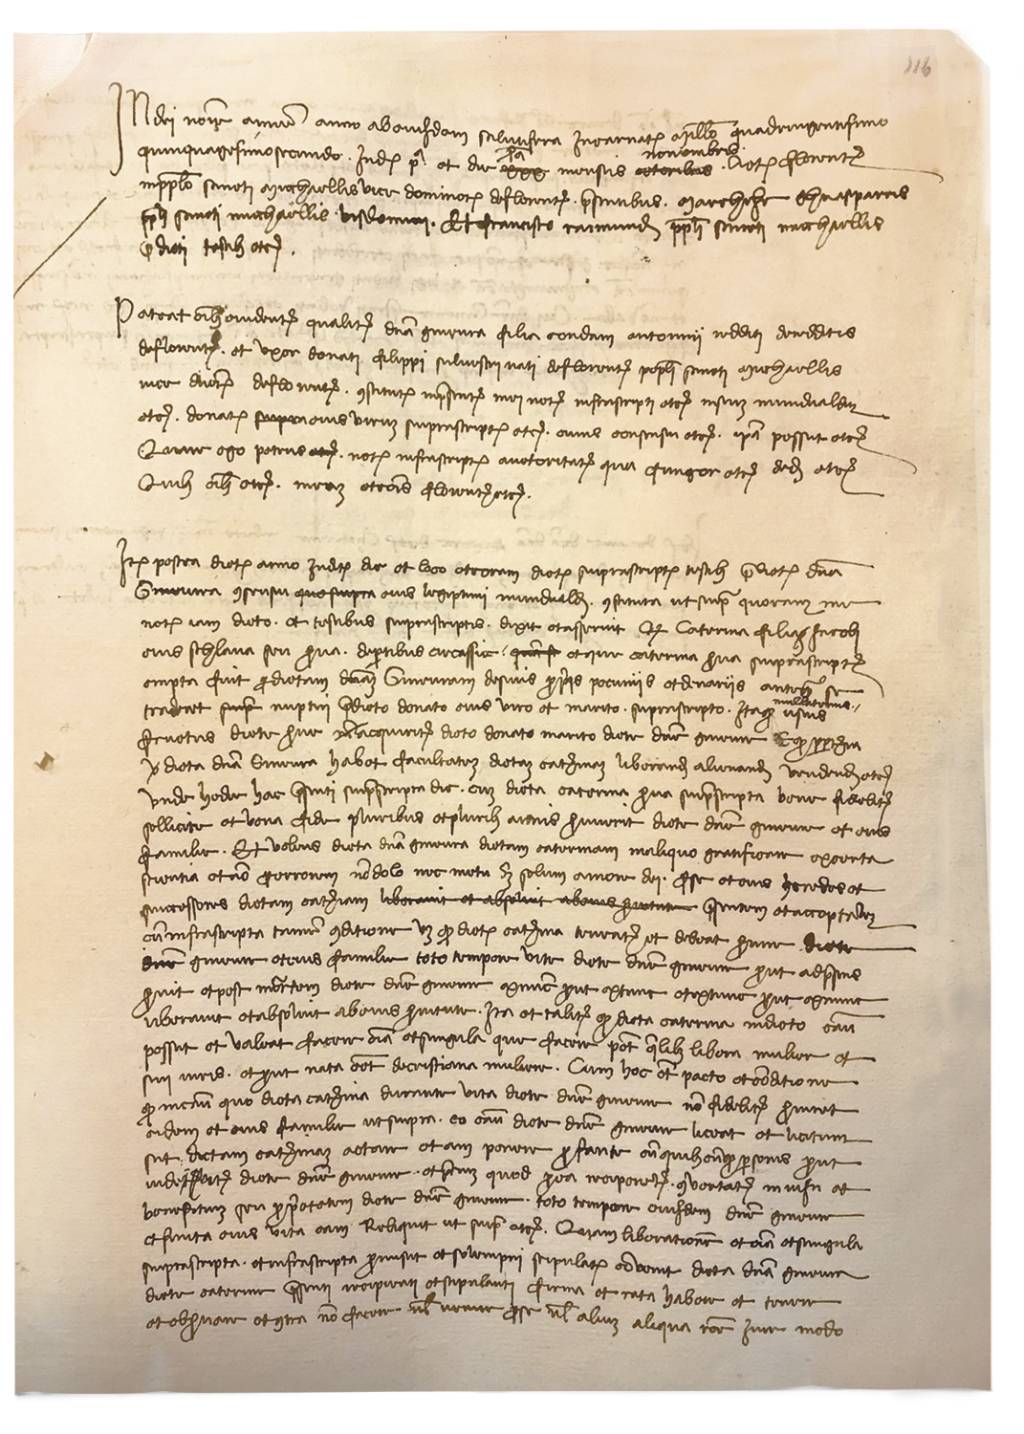 CERTIDÃO - O documento lavrado pelo pai de Leonardo e agora revelado: carta de alforria de Caterina di Jacobi